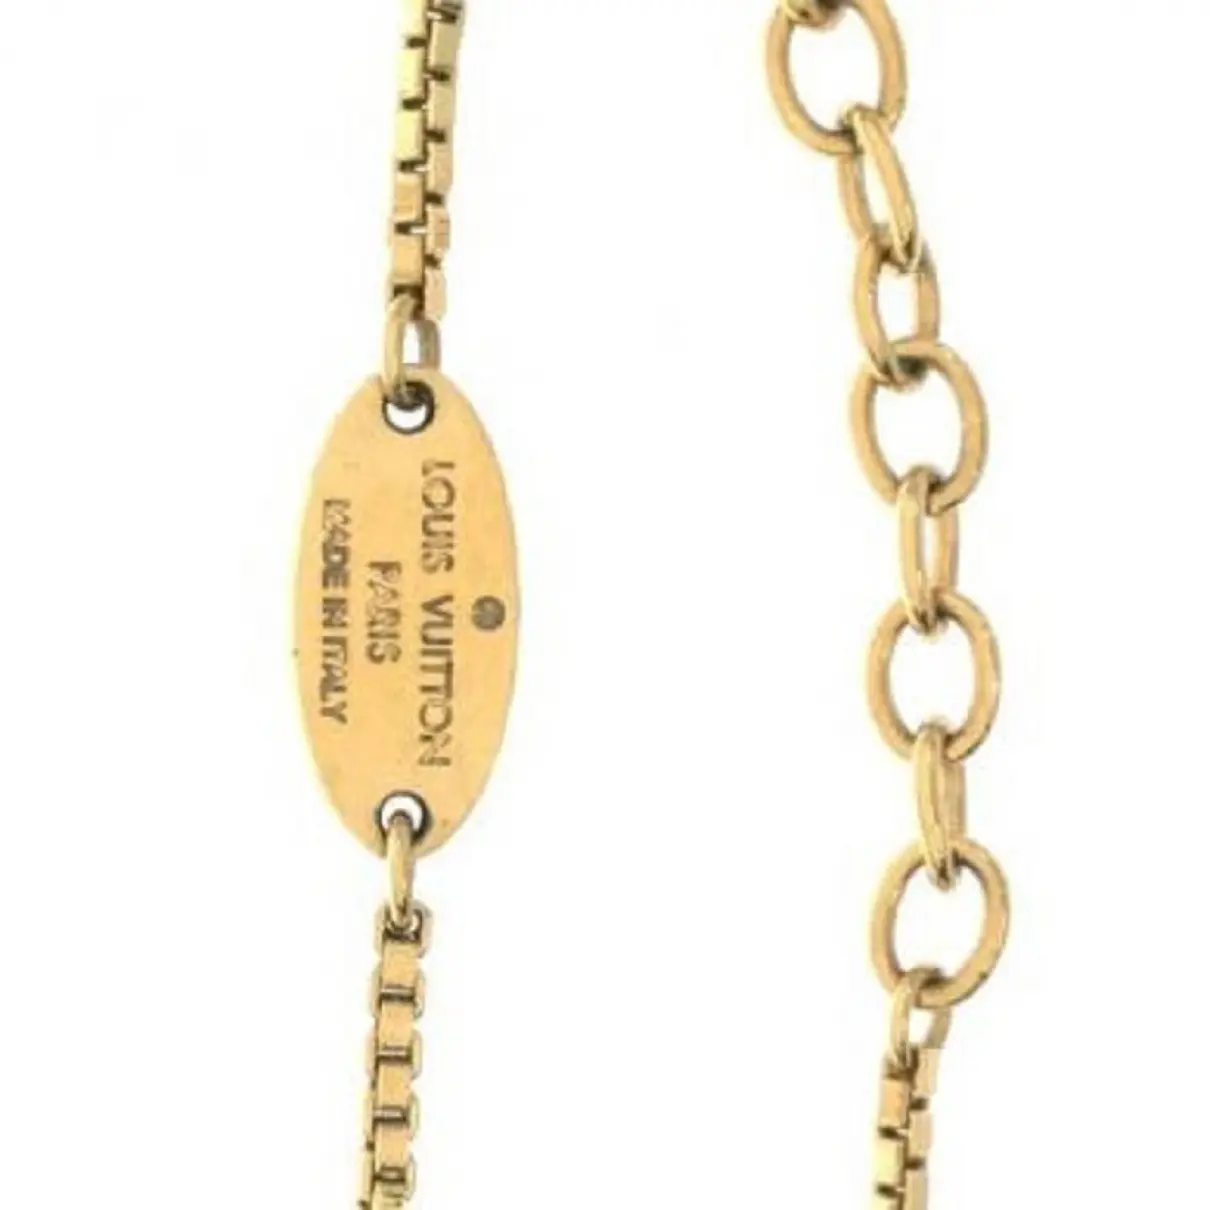 Luxury Louis Vuitton Necklaces Women